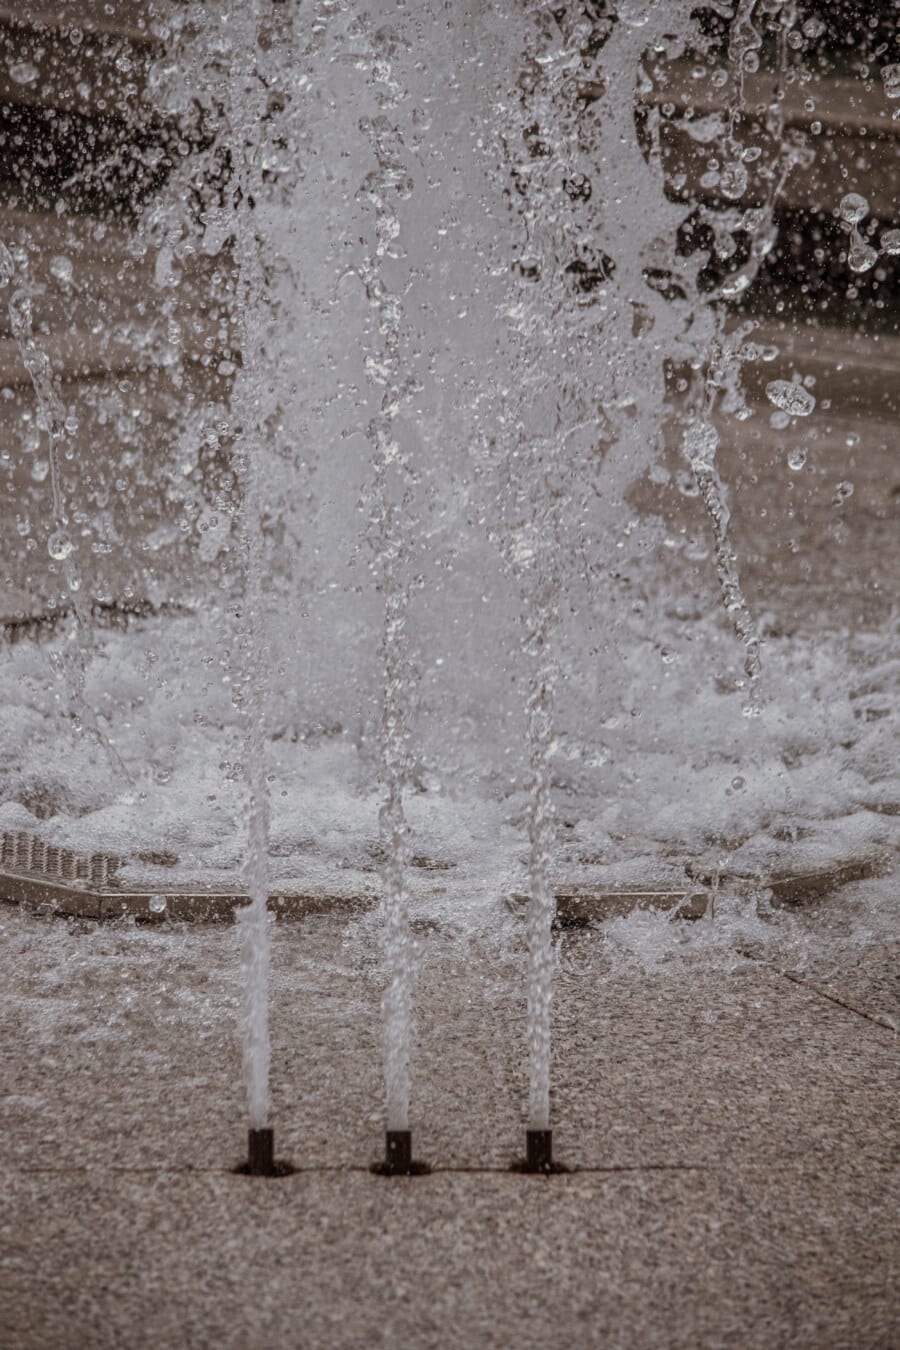 pompa acqua, salto di acqua, bagnato, Fontana, spruzzo, fronzolo, bianco e nero, dettaglio, umidità, urbano